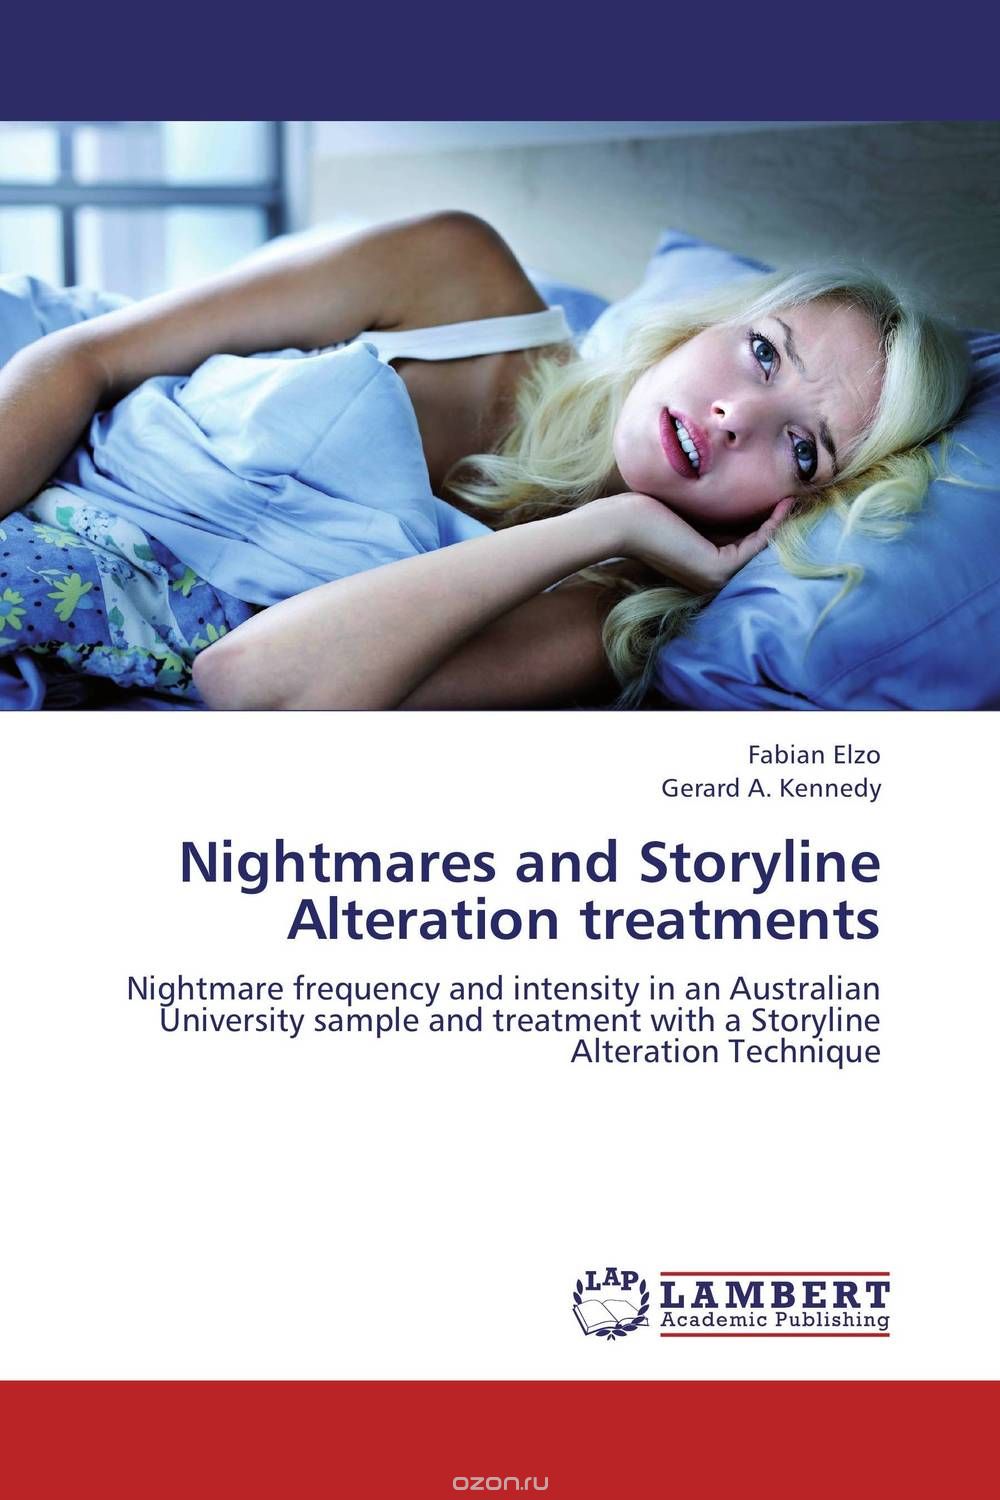 Скачать книгу "Nightmares and Storyline Alteration treatments"